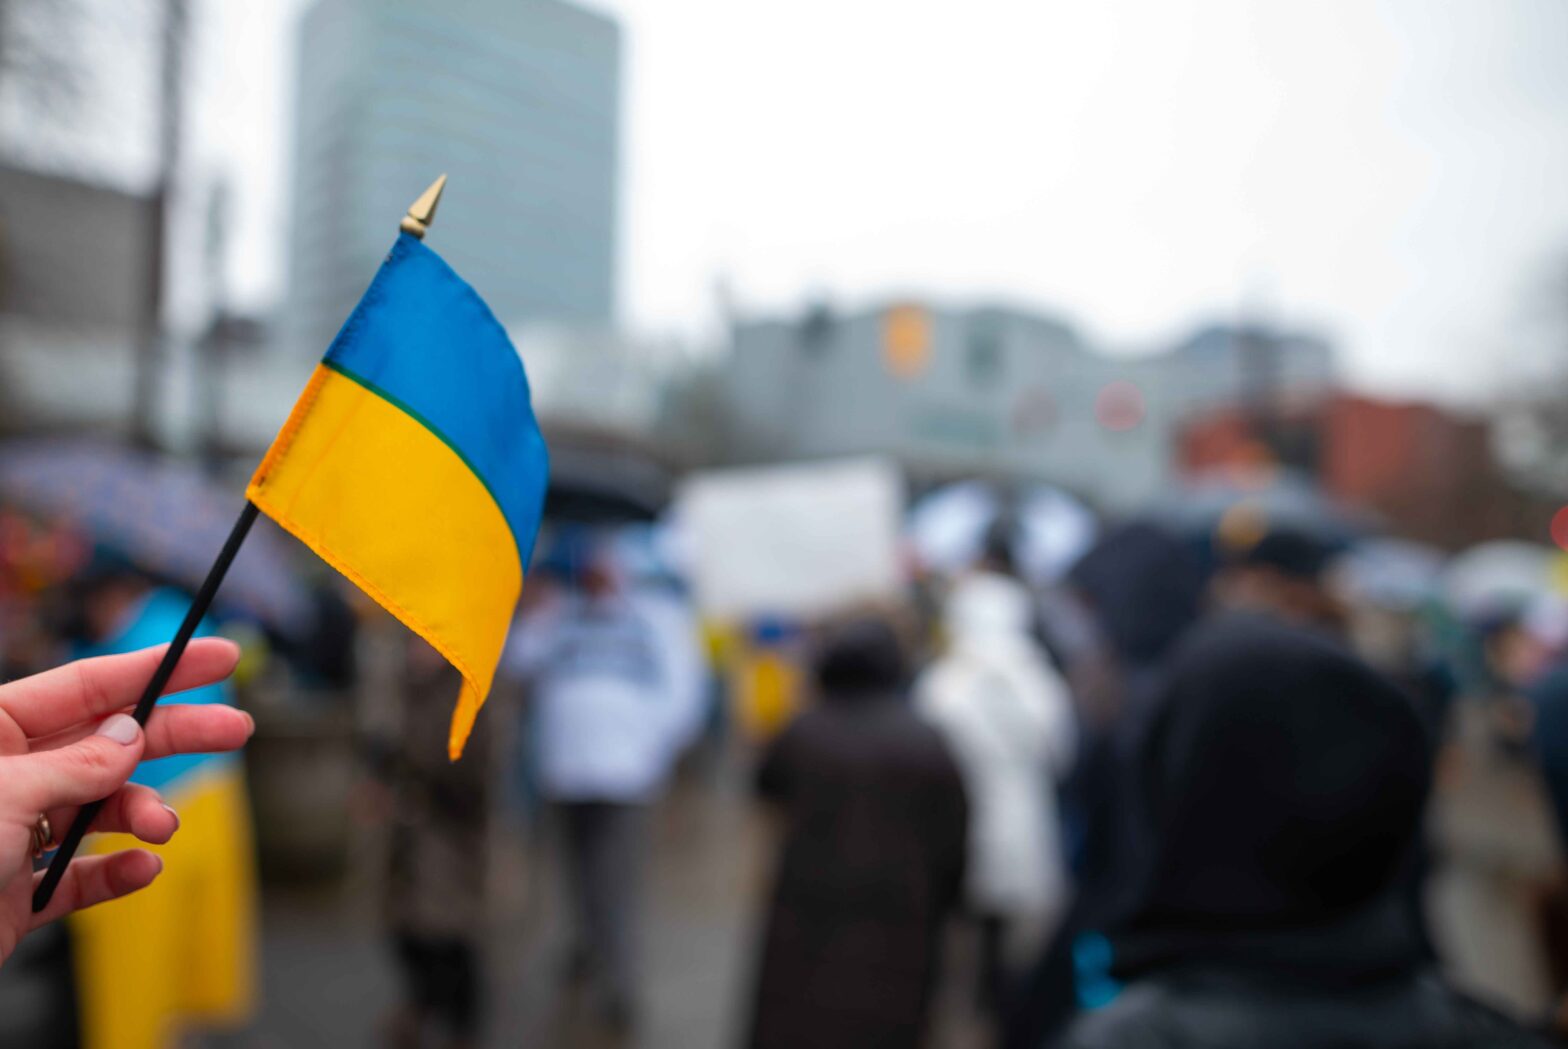 Zenith downgrades spend forecast amid Ukraine invasion